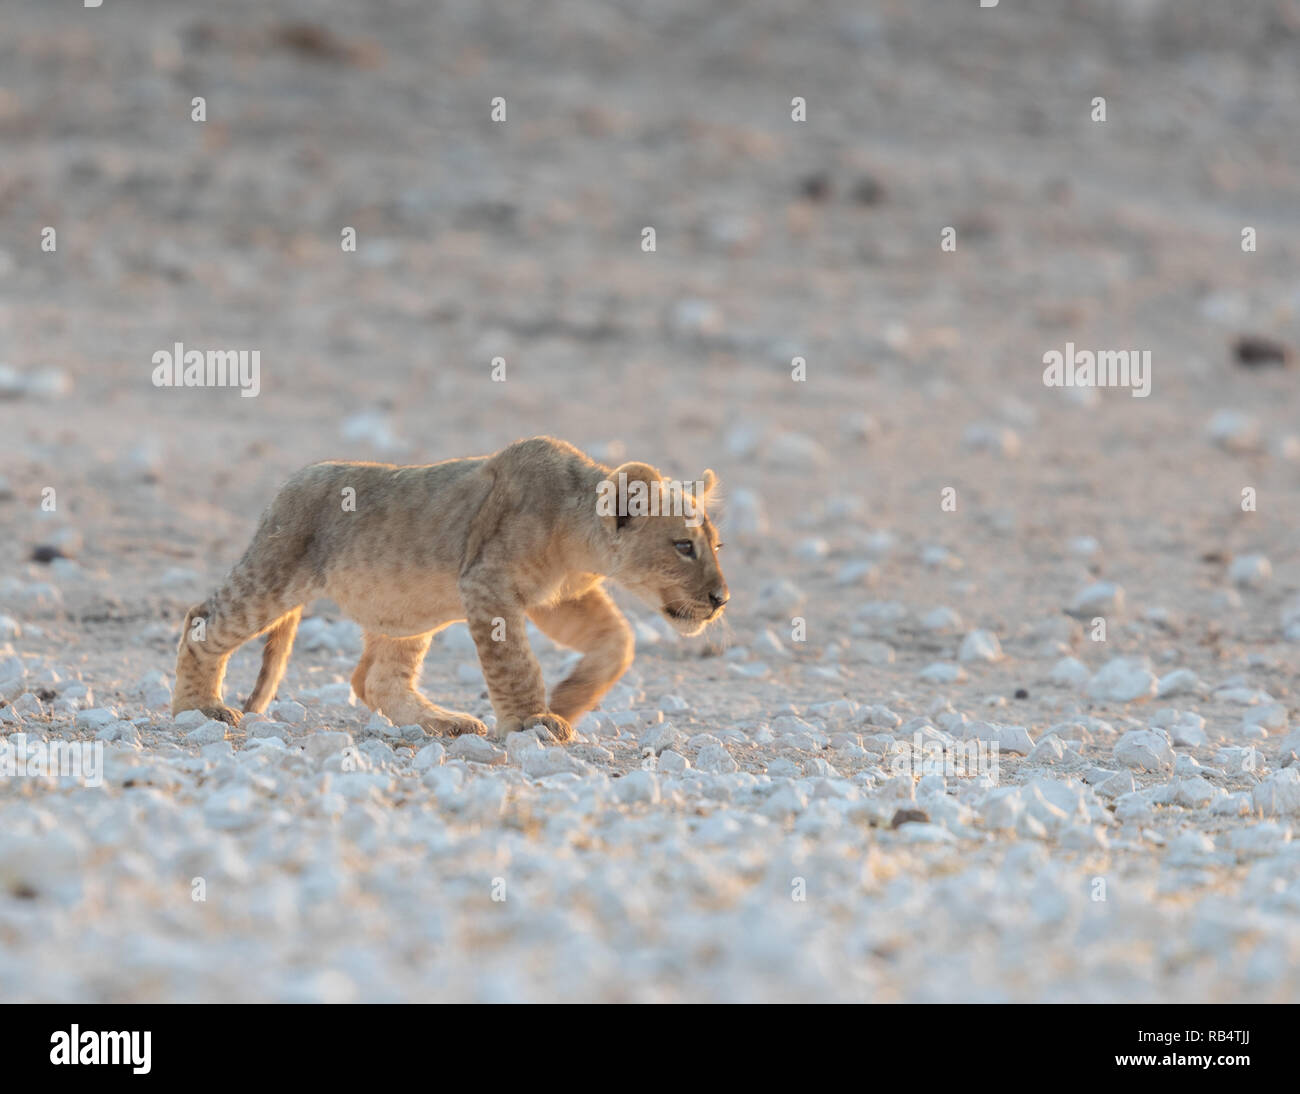 Die jungen Cub schaut mischevious Roaming der Wüste. NAMIBIA, Afrika: Diese MISCHIVIOUS lion Cub kann nicht warten, König zu werden, wie er ringt mit seinem müden Mama Stockfoto